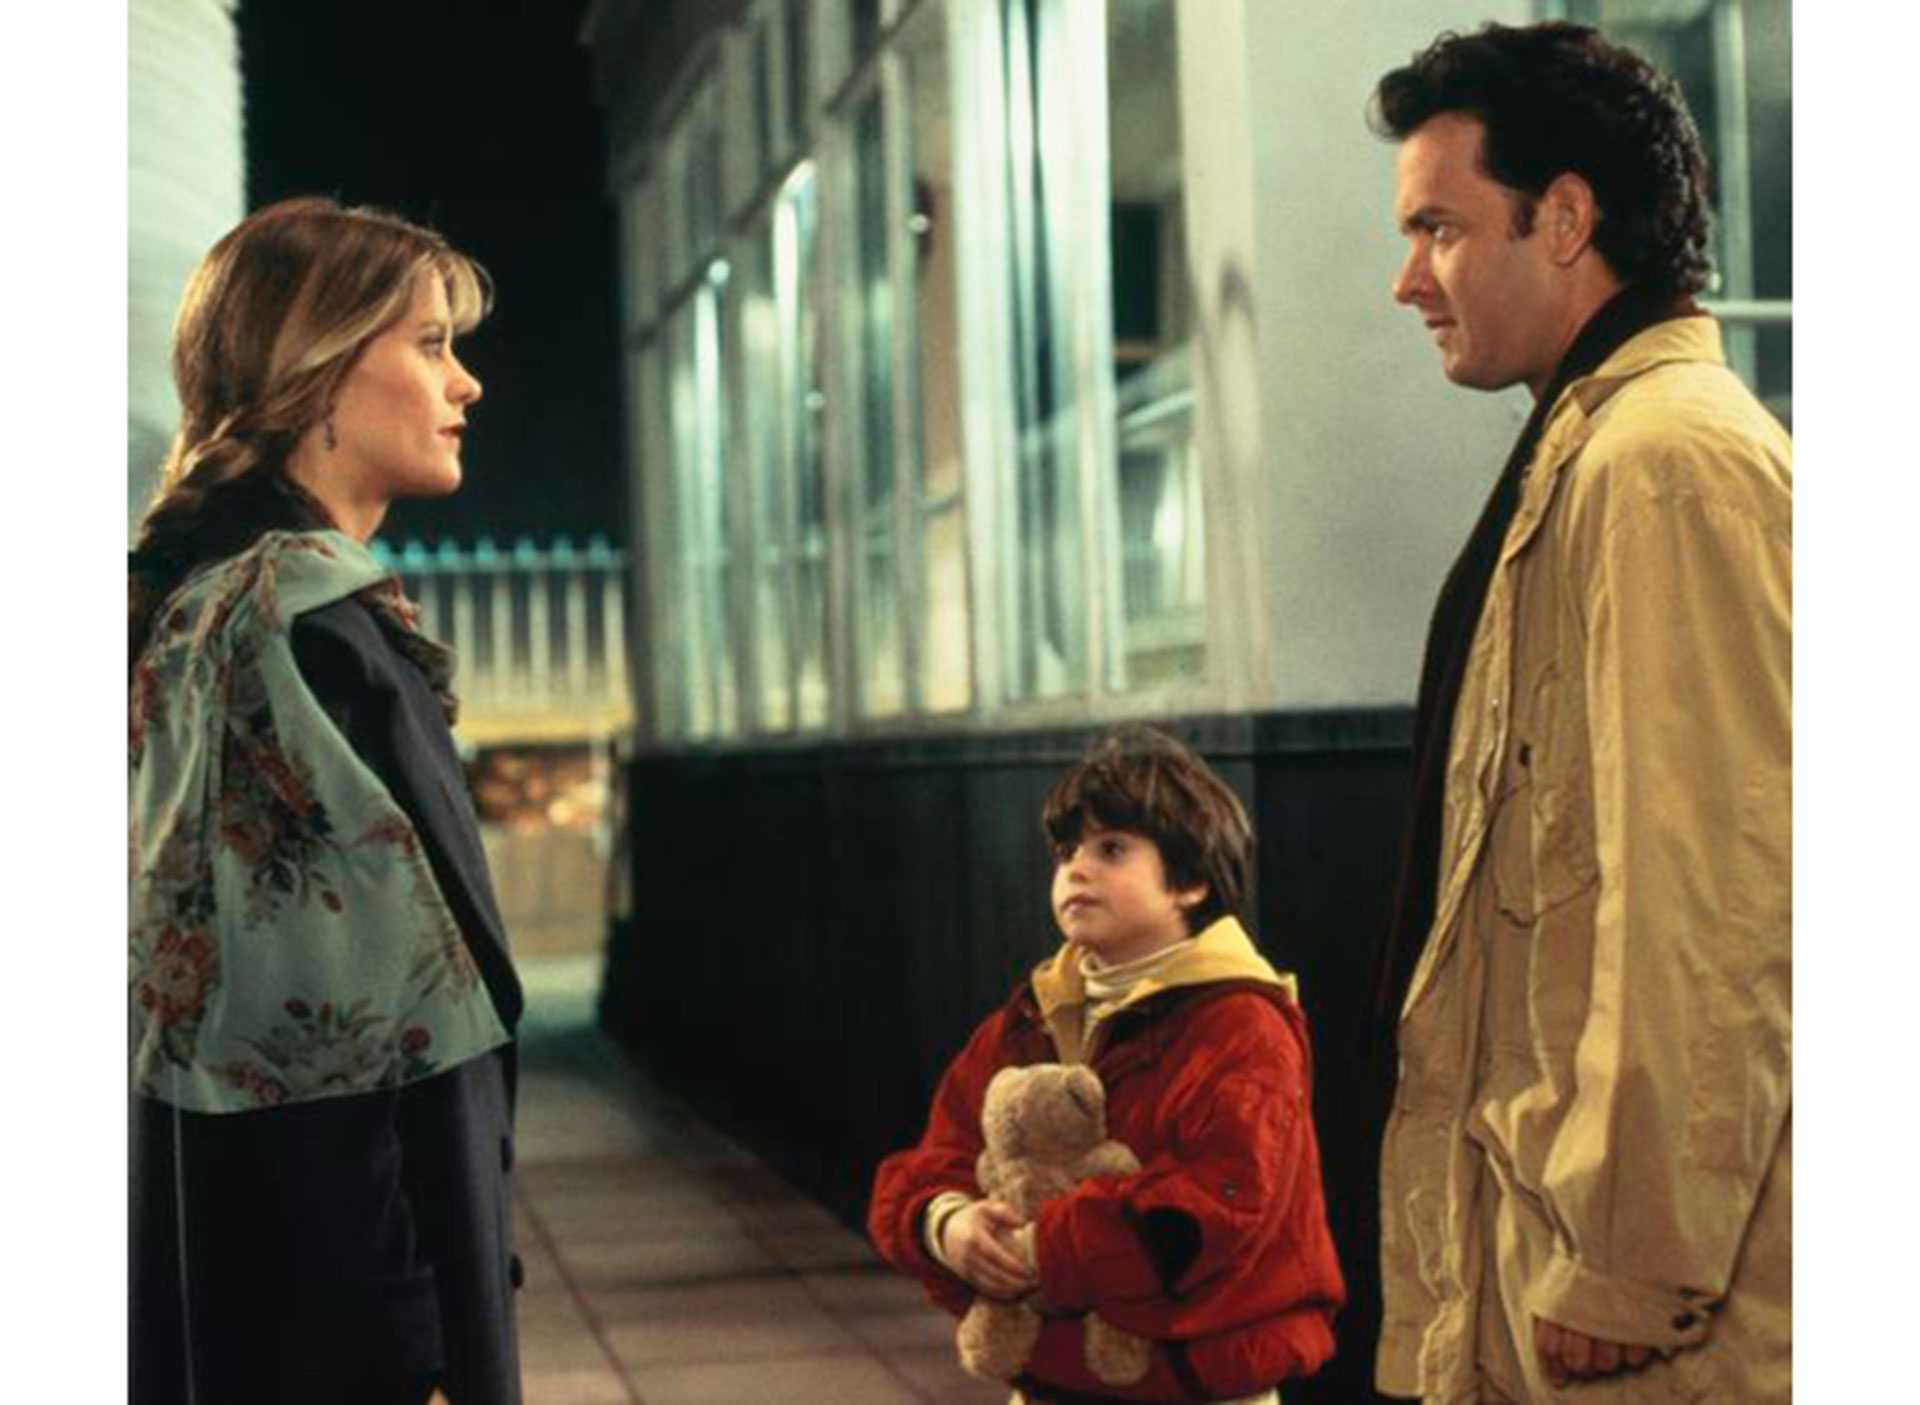 "Sintonía de amor" volvió a reunir a dos de los actores más carismáticos de las películas románticas como Tom Hanks y Meg Ryan
IMBD